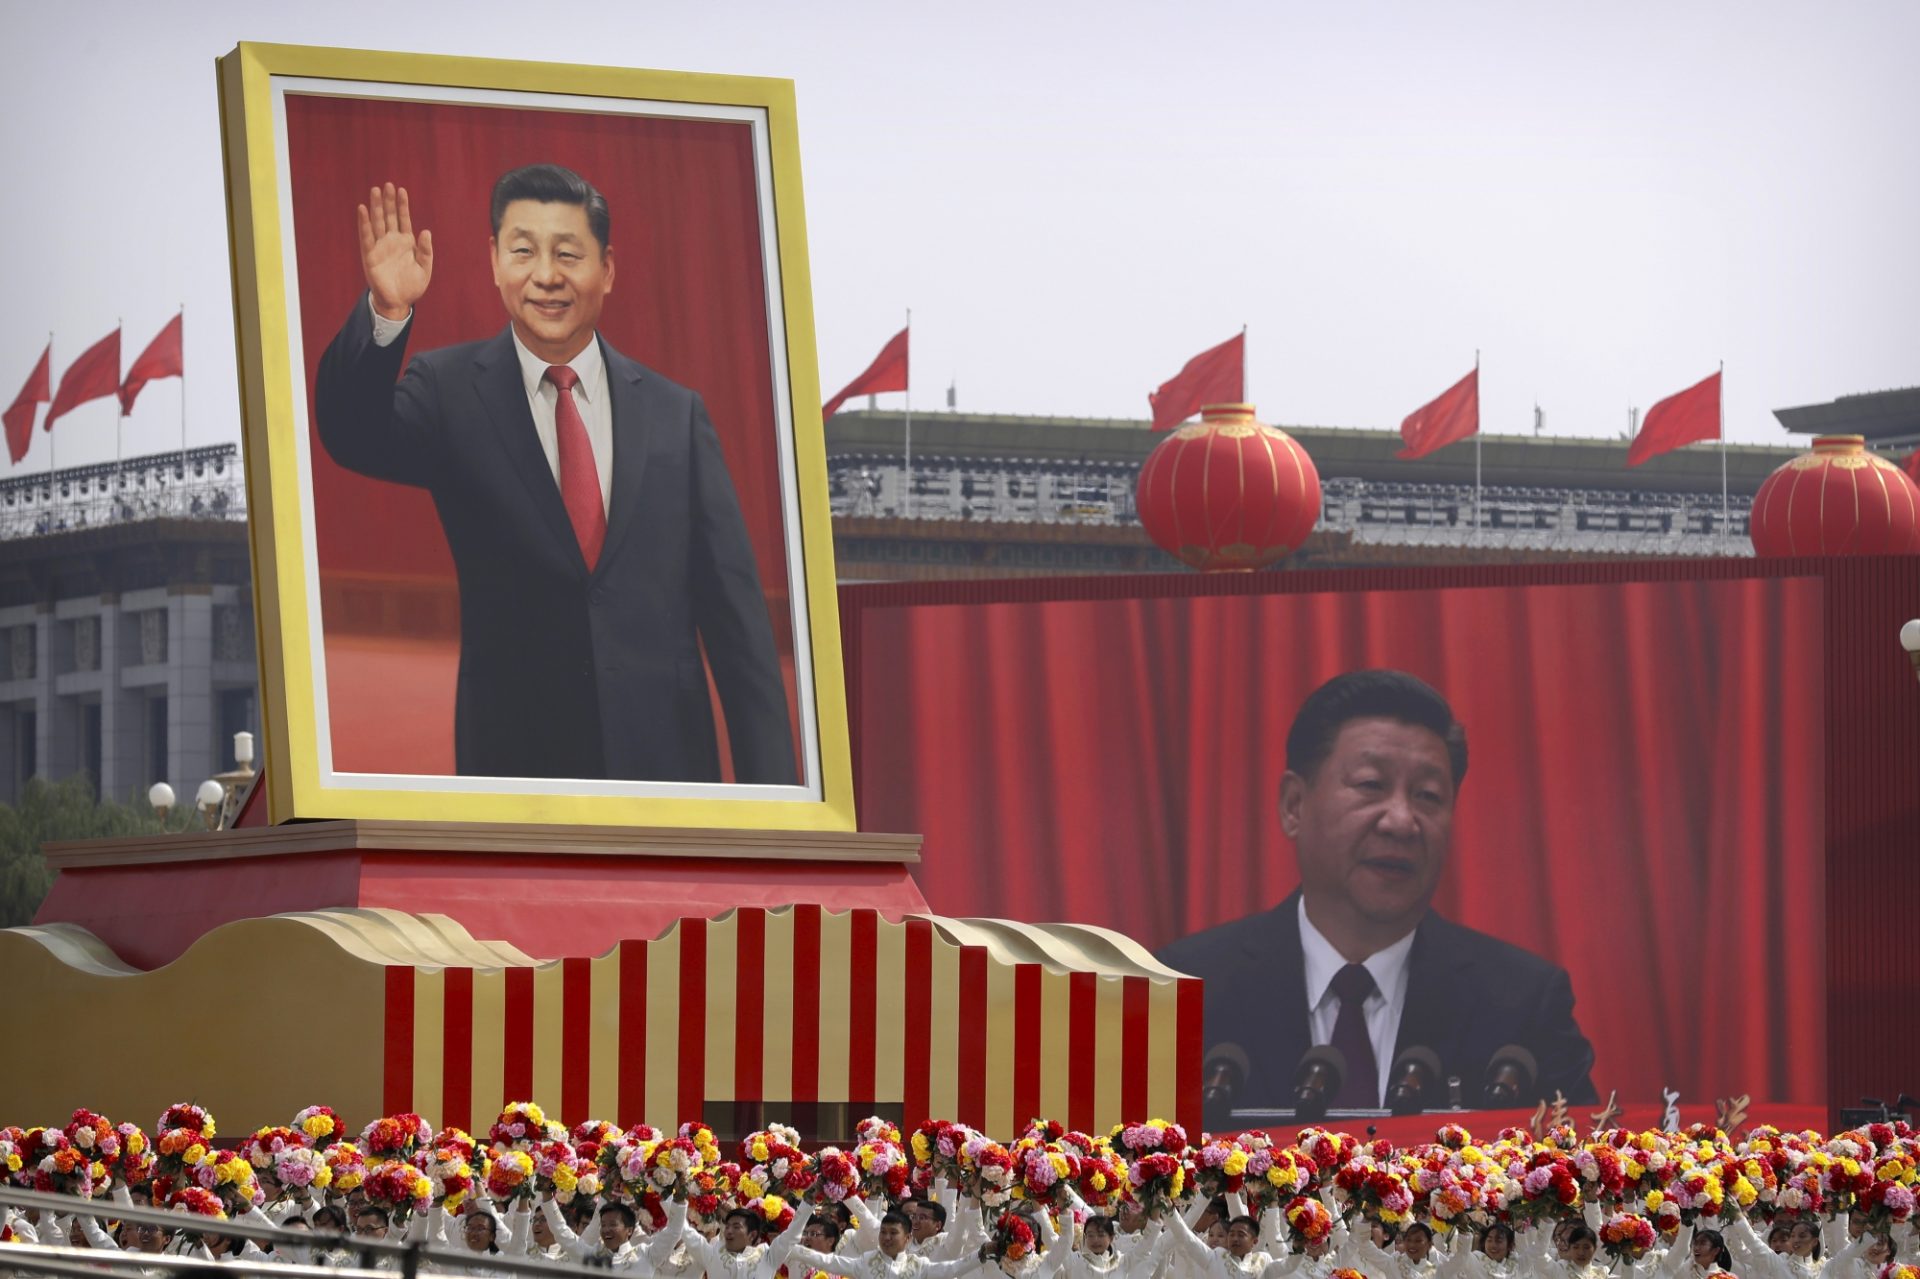 China a creat un ”coșmar” pentru jurnaliști. RSF compară situația actuală a presei cu opresiunile lui Mao